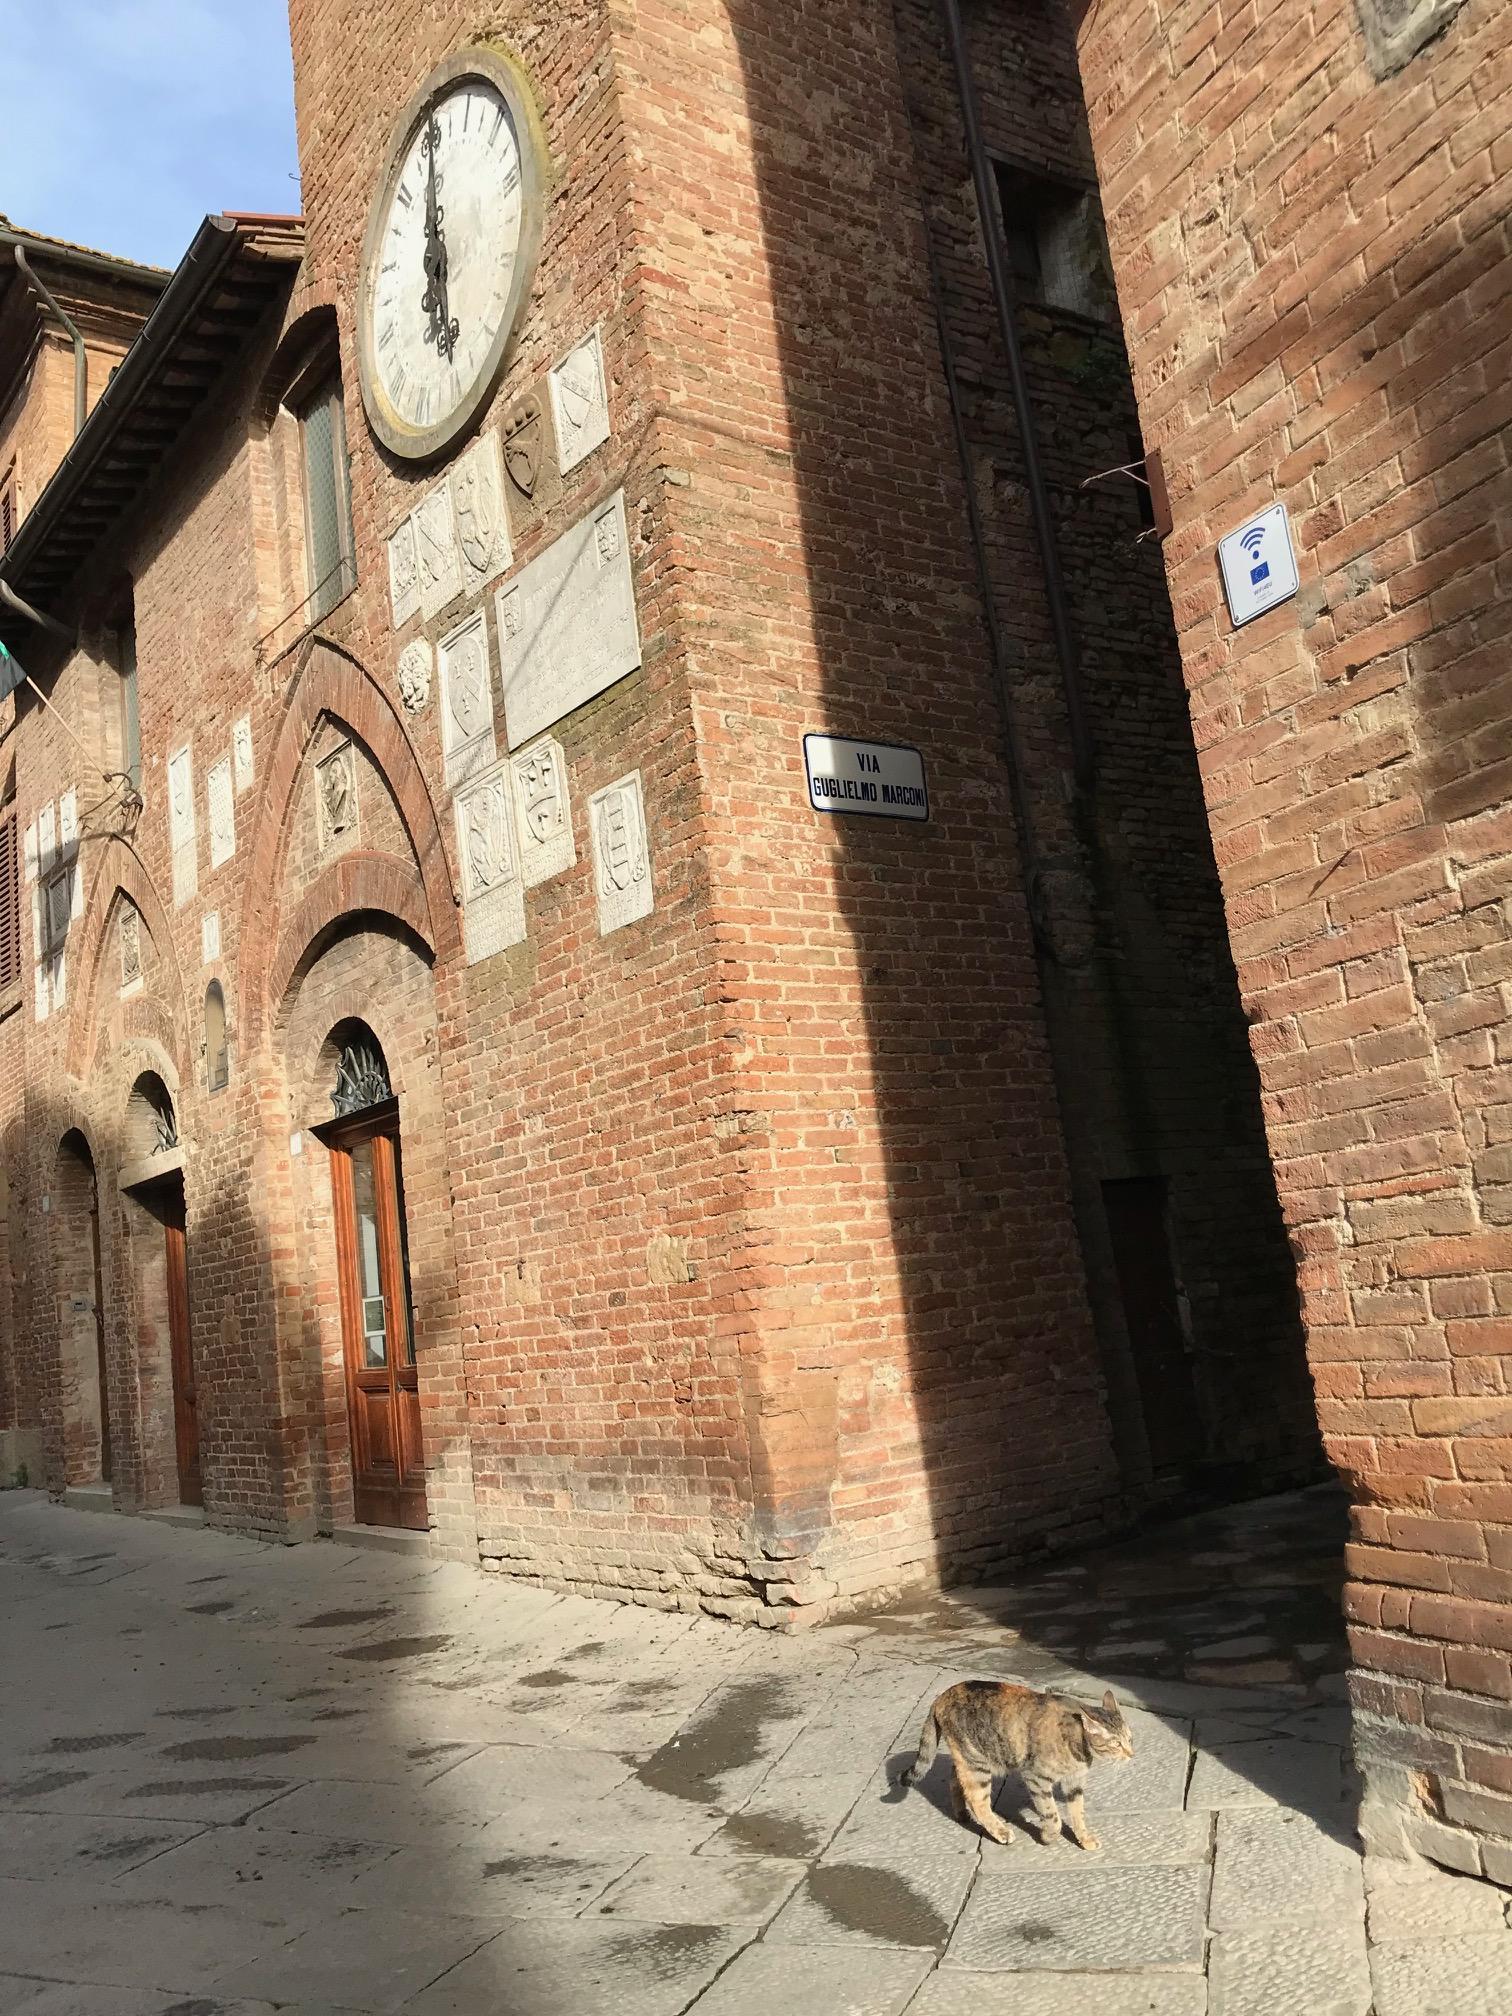 歴史を感じさせる建物(Palazzo del Podestàと時計塔)の前を歩く猫も絵になりますね。